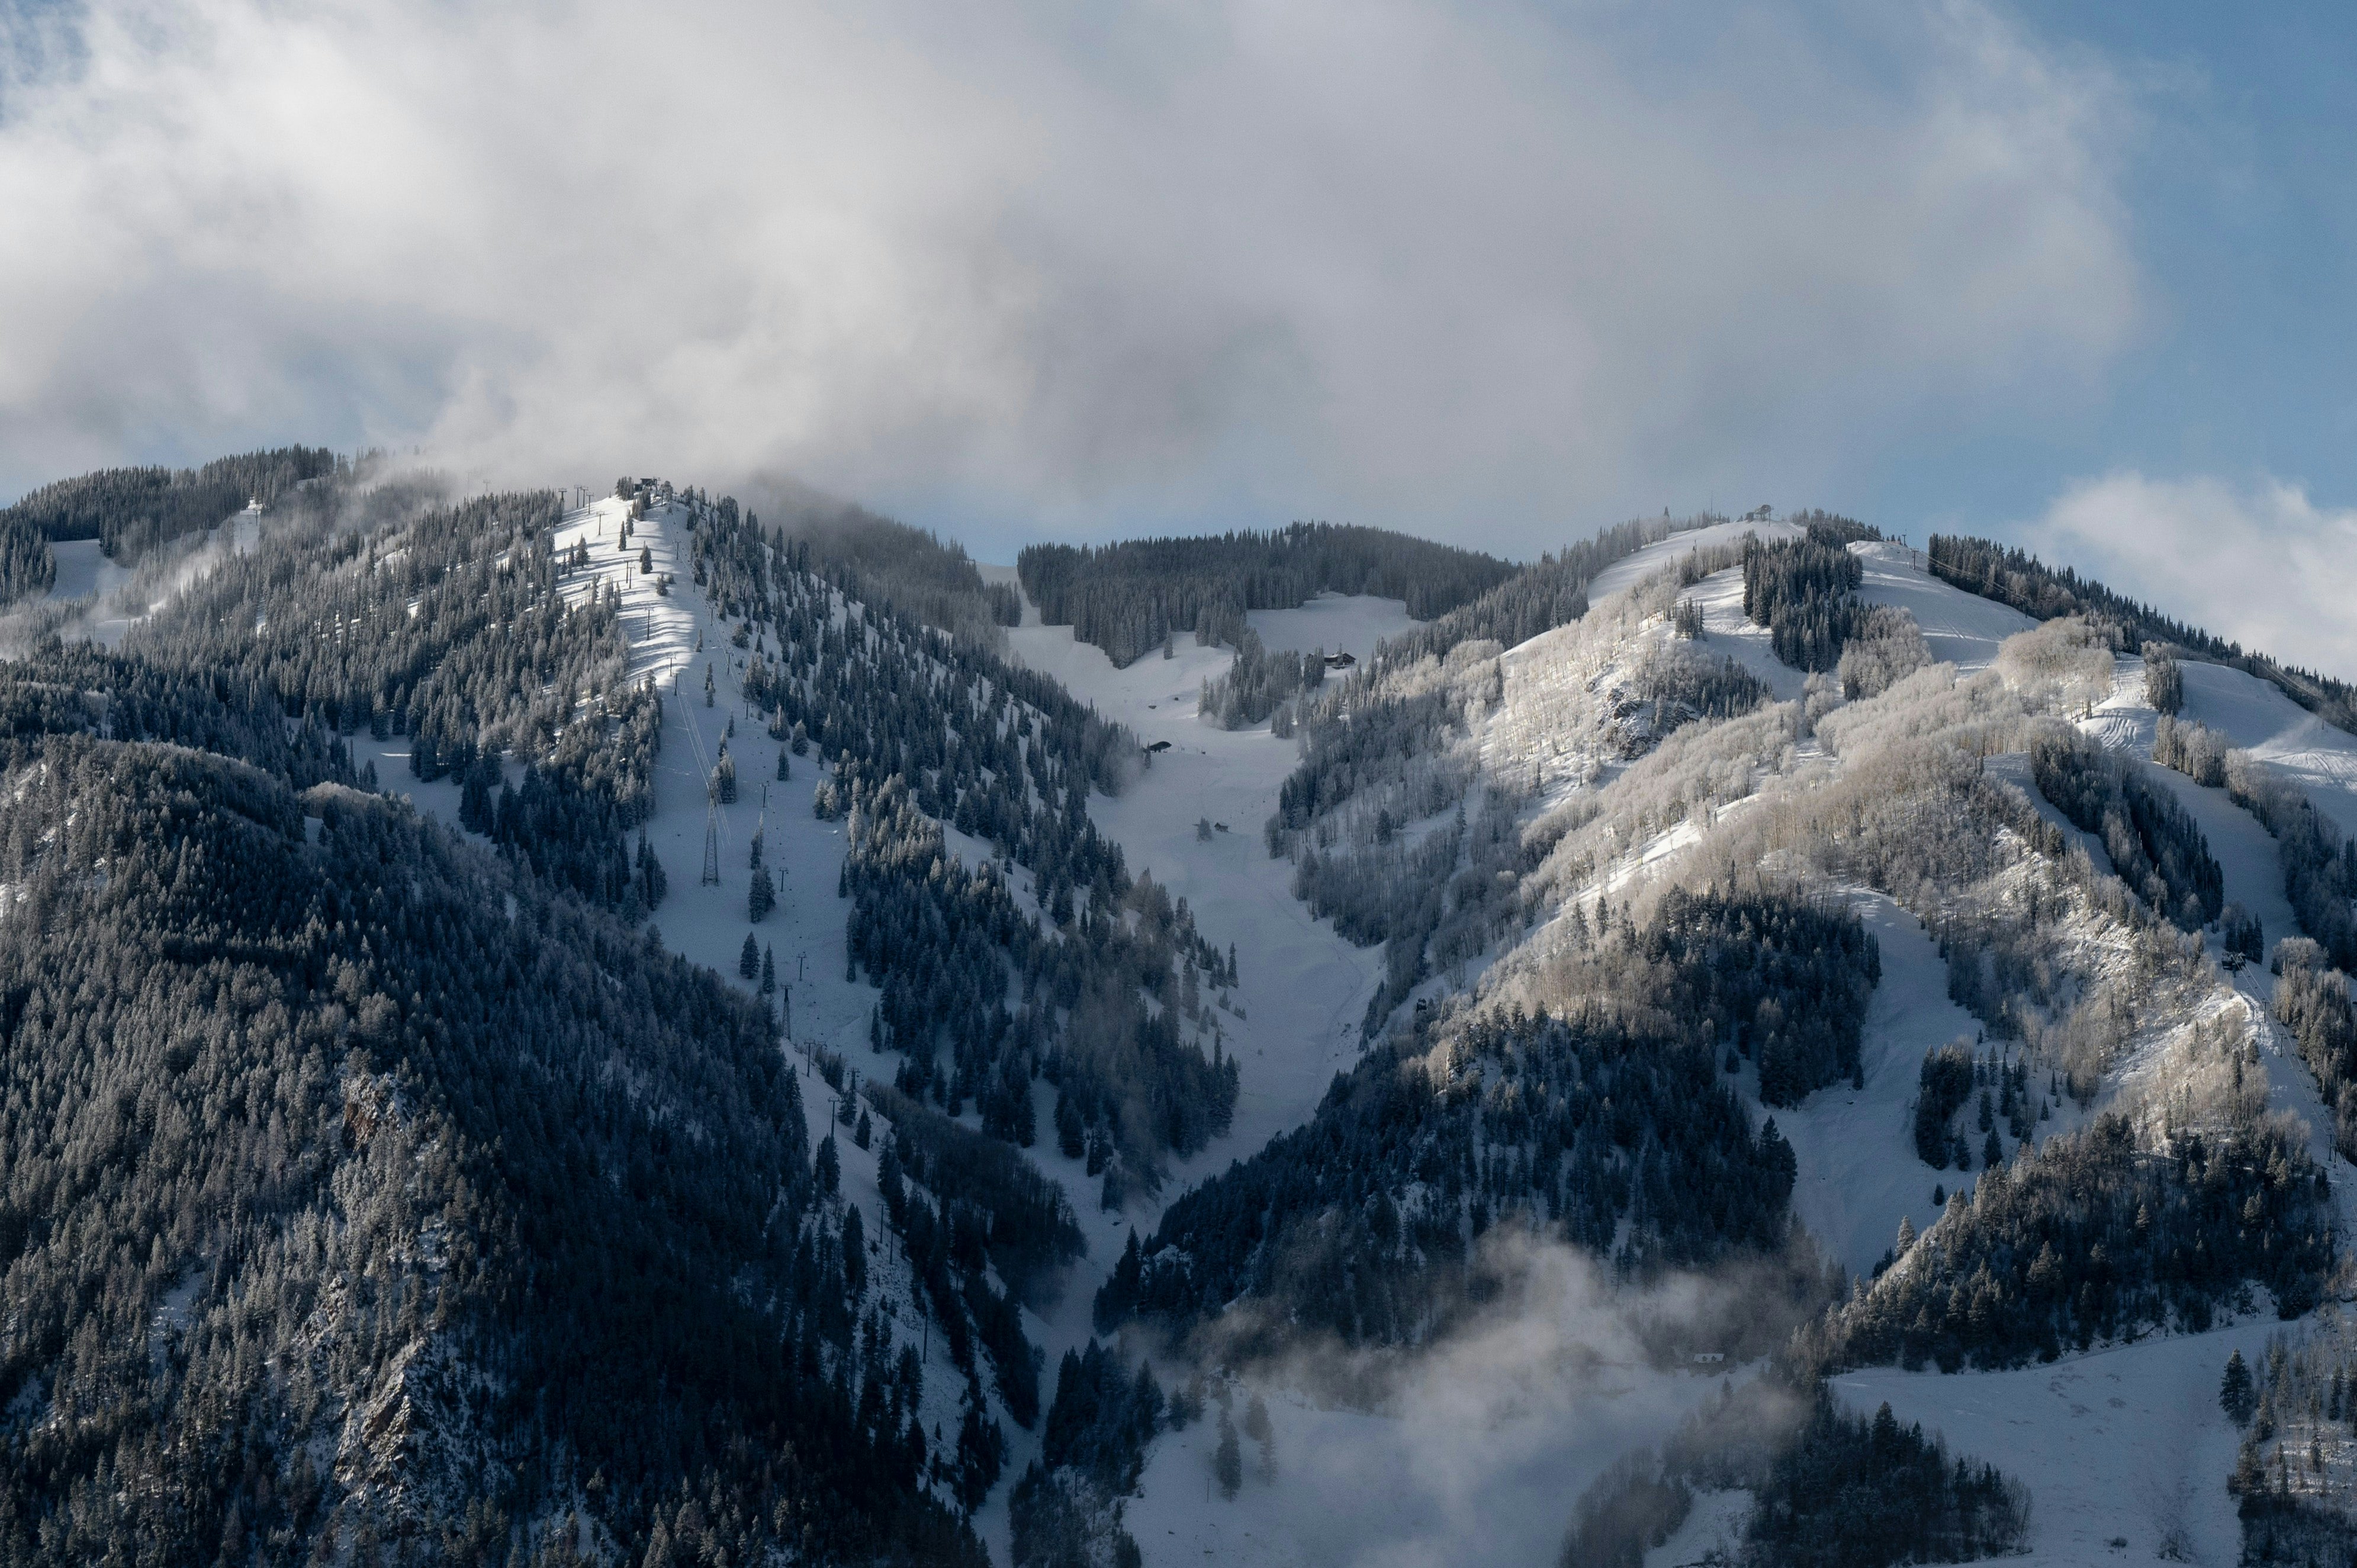 Aspen Snowmass, USA